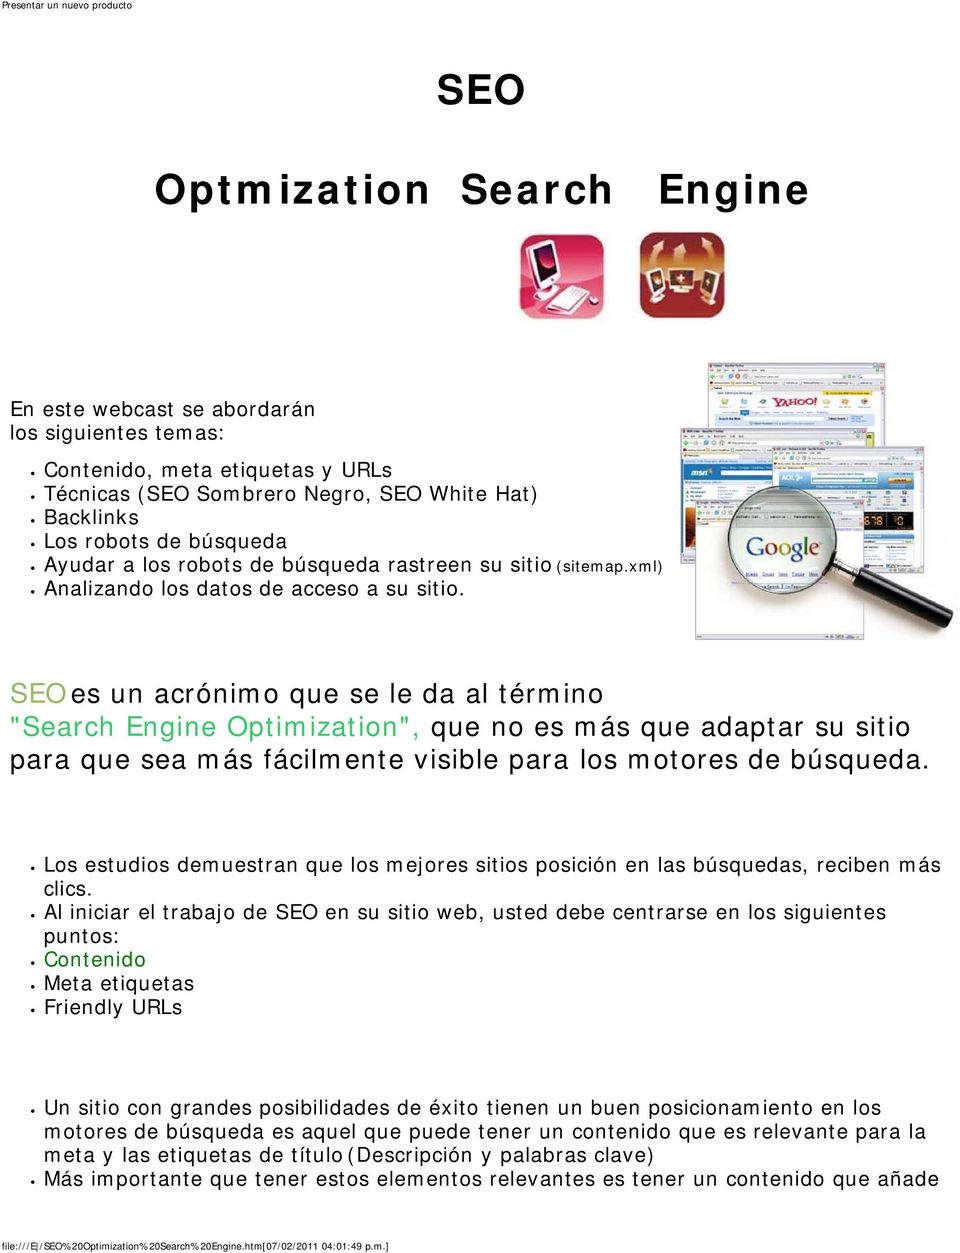 Introducción SEO es un acrónimo que se le da al término "Search Engine Optimization", que no es más que adaptar su sitio para que sea más fácilmente visible para los motores de búsqueda.